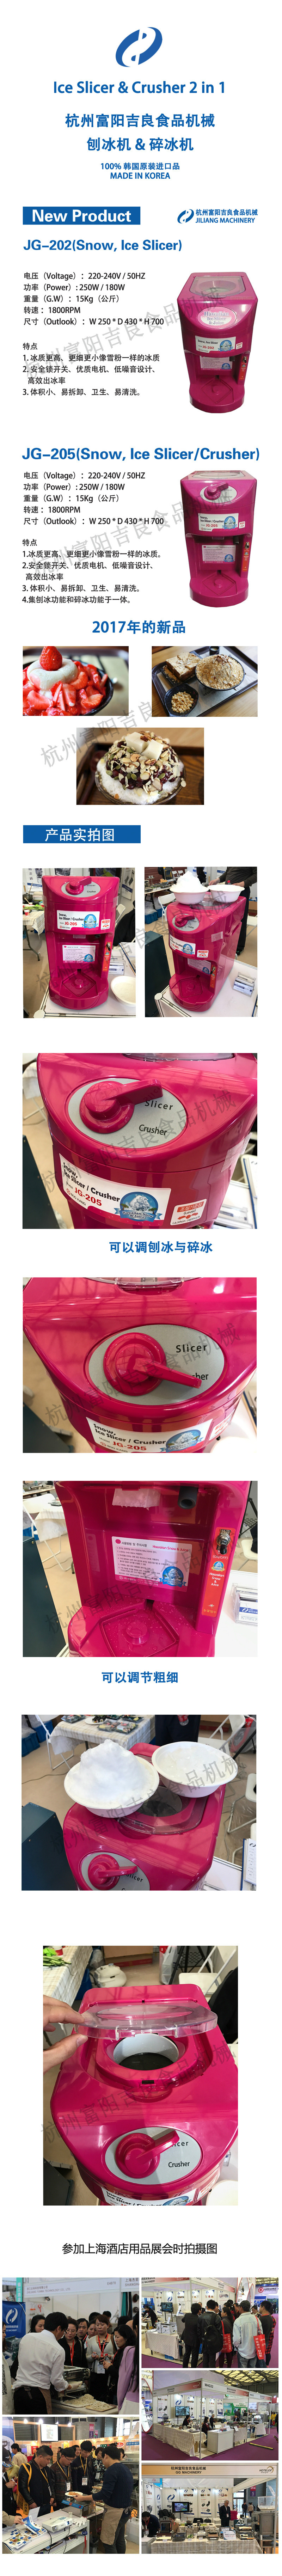 吉良食品机械 JG205 韩国进口刨冰机& 碎冰机二合一 商用雪冰机